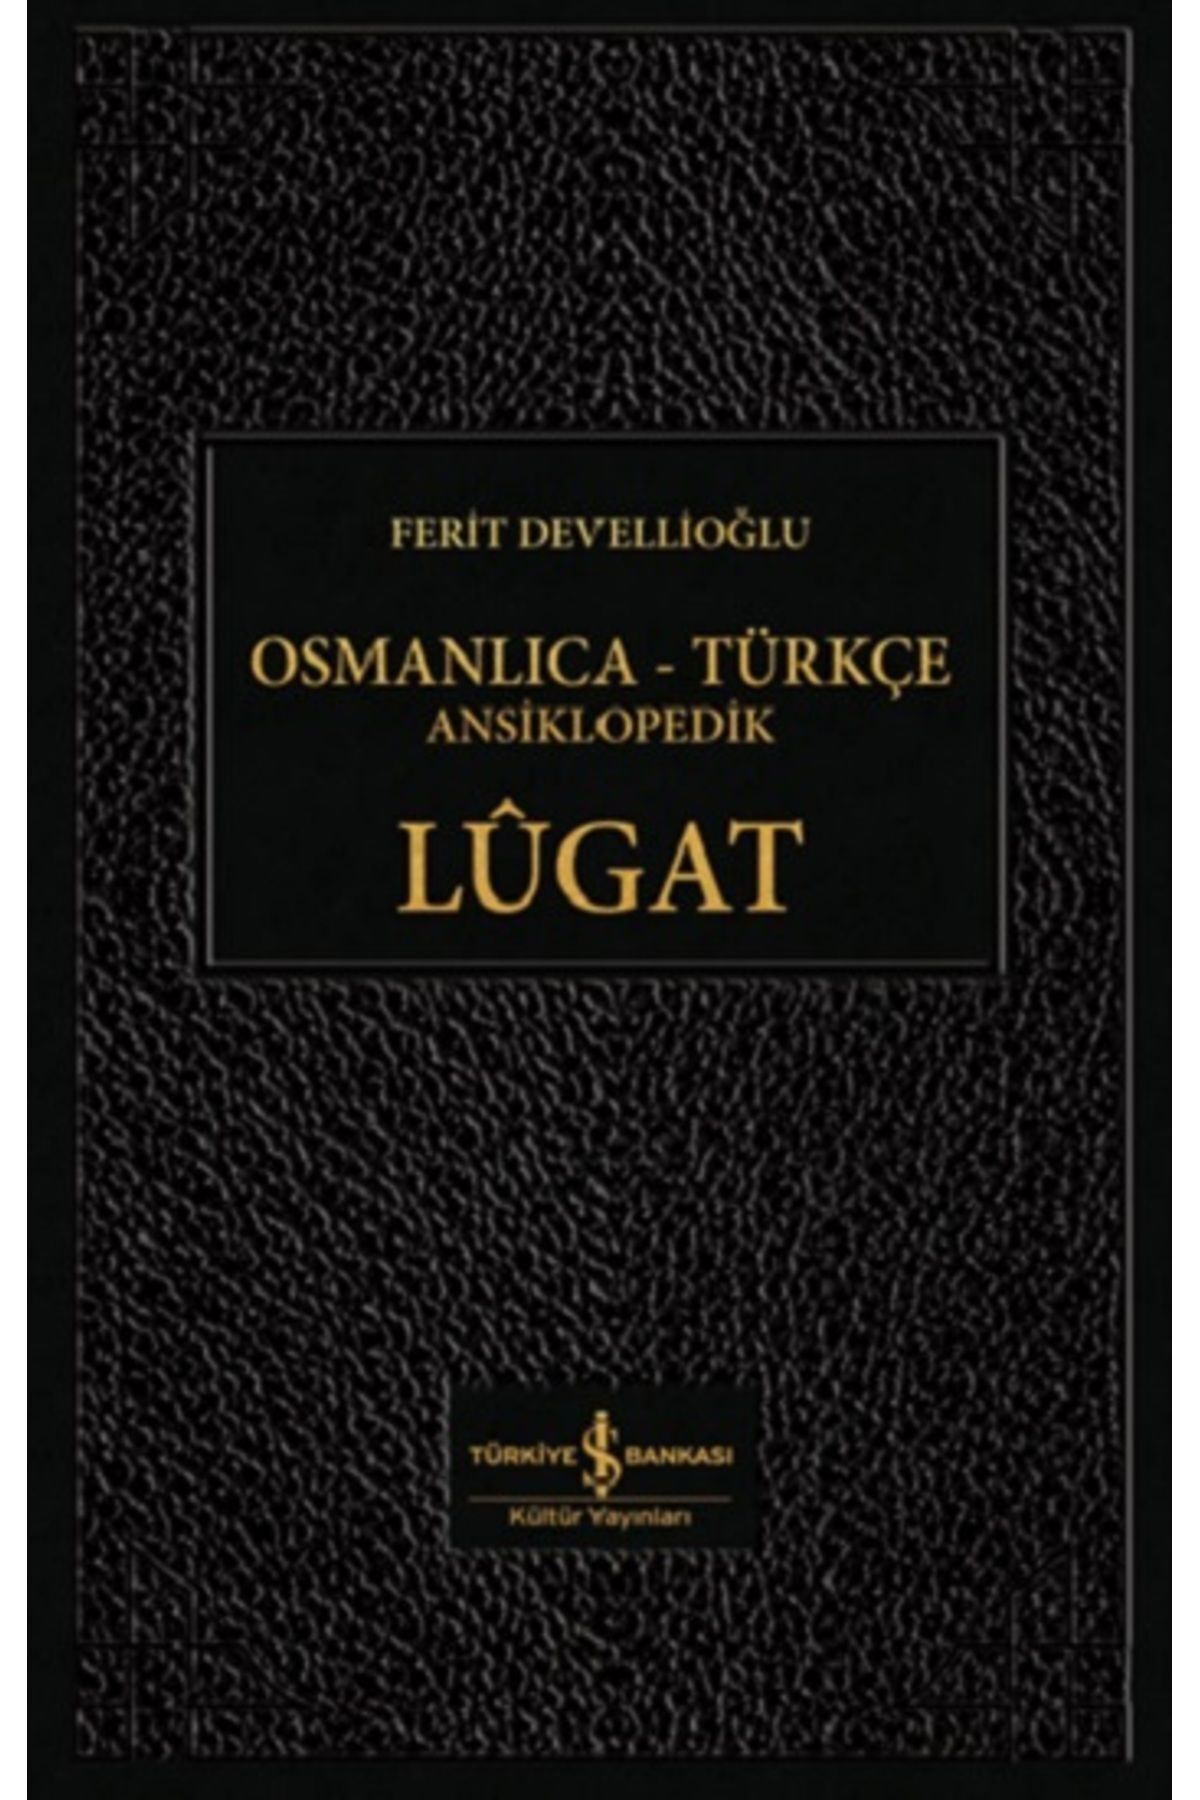 Türkiye İş Bankası Kültür Yayınları Osmanlıca - Türkçe Ansiklopedik Lügat (CİLTLİ)